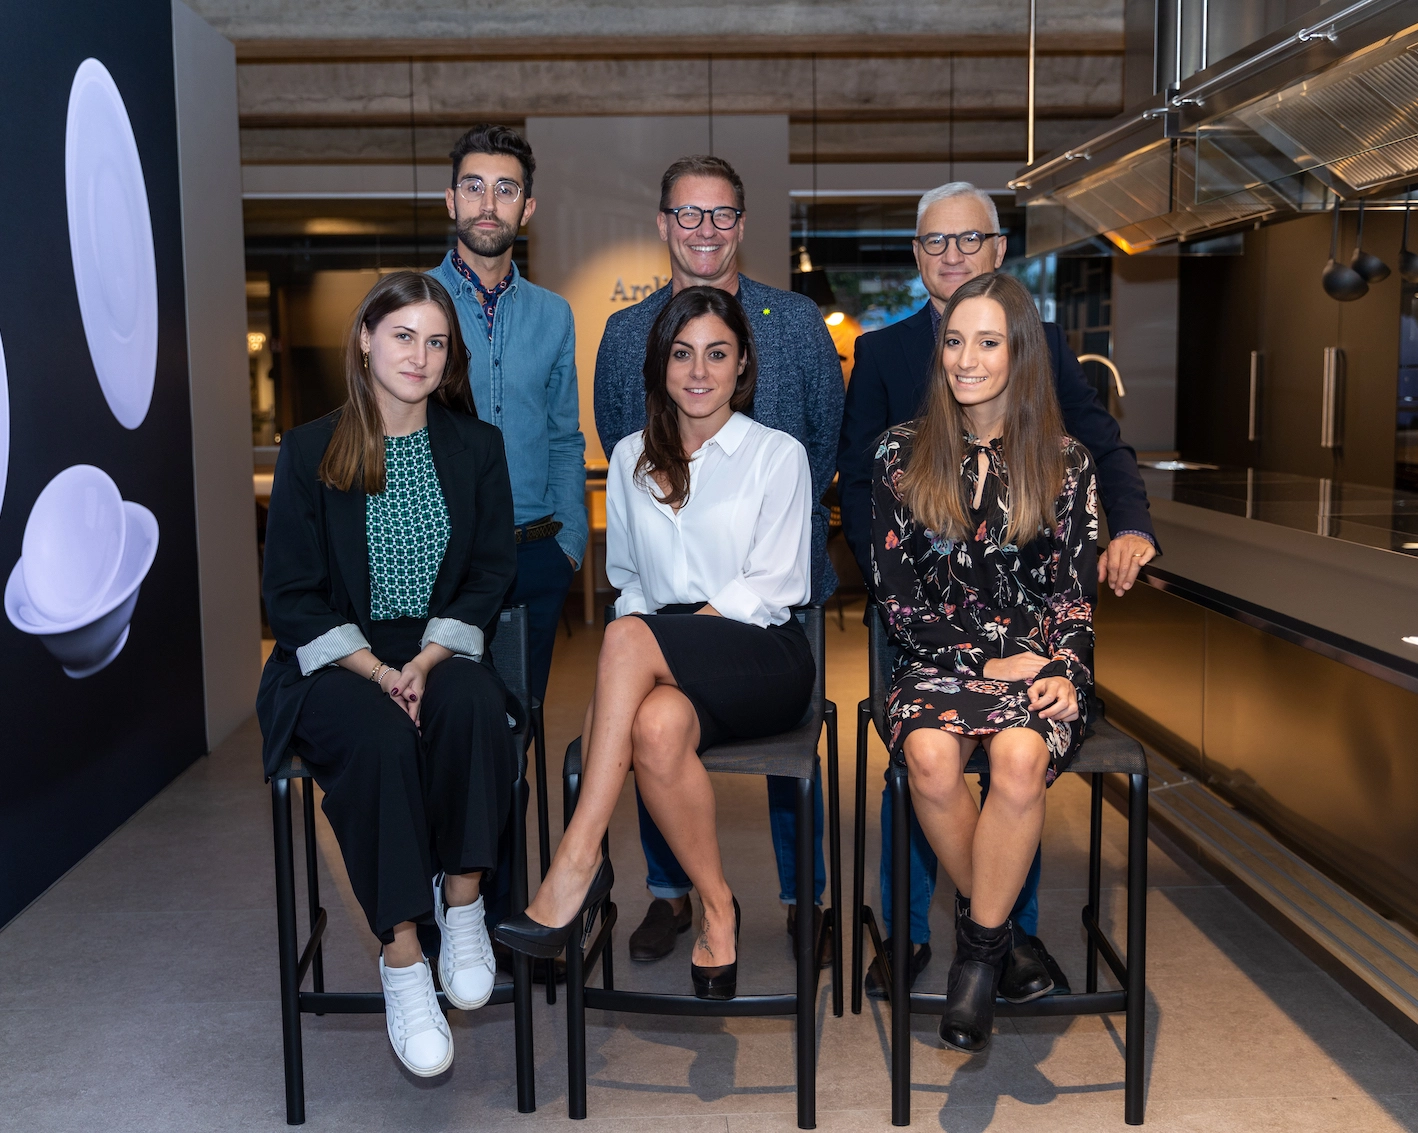 Fotografia del team di Fontana cucine e design. Sono presenti 6 persone, tre uomini in piedi e tre donne sedute su degli sgabelli davanti a loro